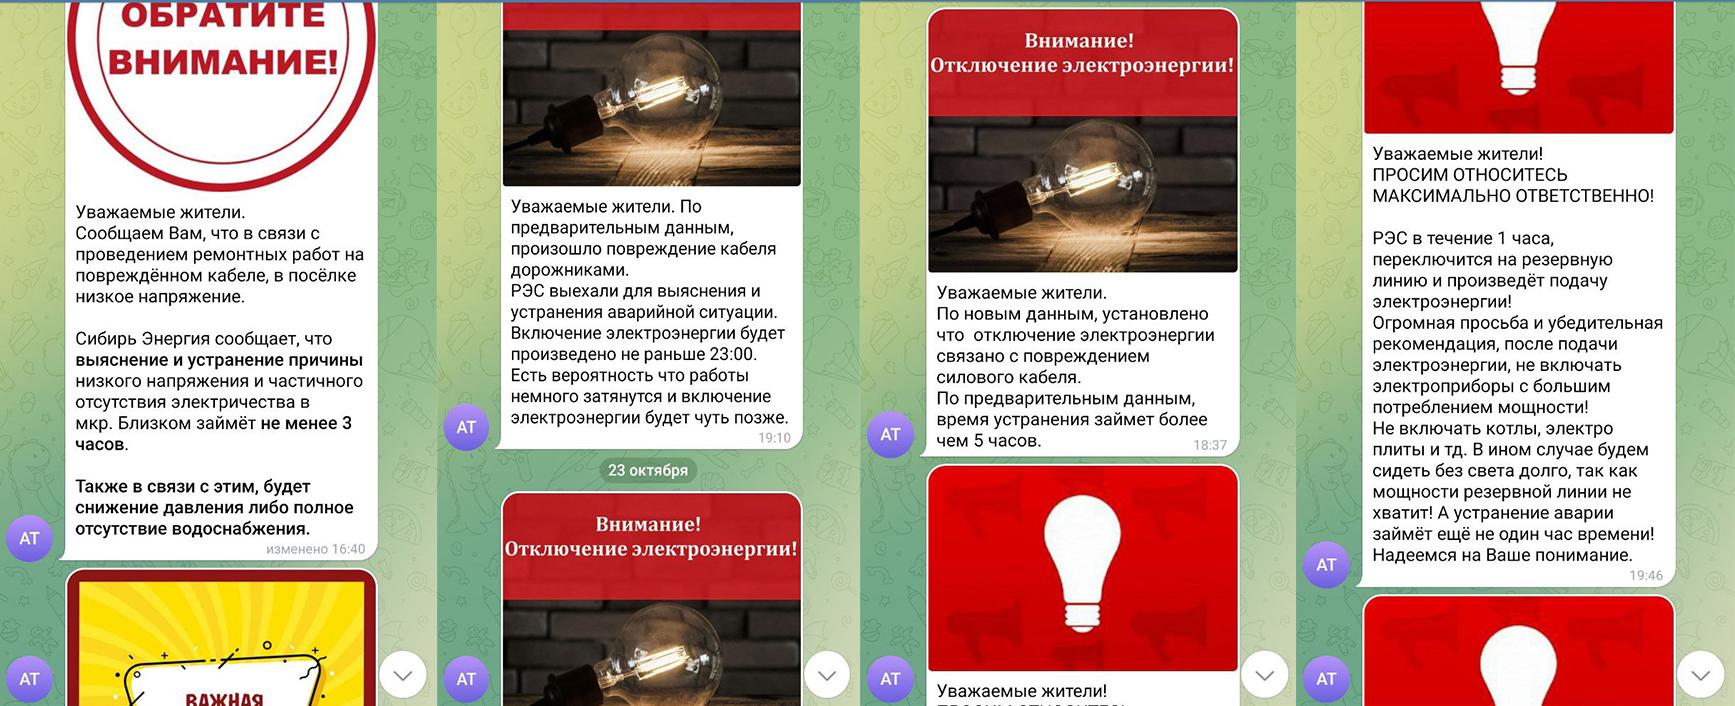 Фото Без света, воды и тепла: в Каменке под Новосибирском целый месяц отключают энергоснабжение — кто виноват 2